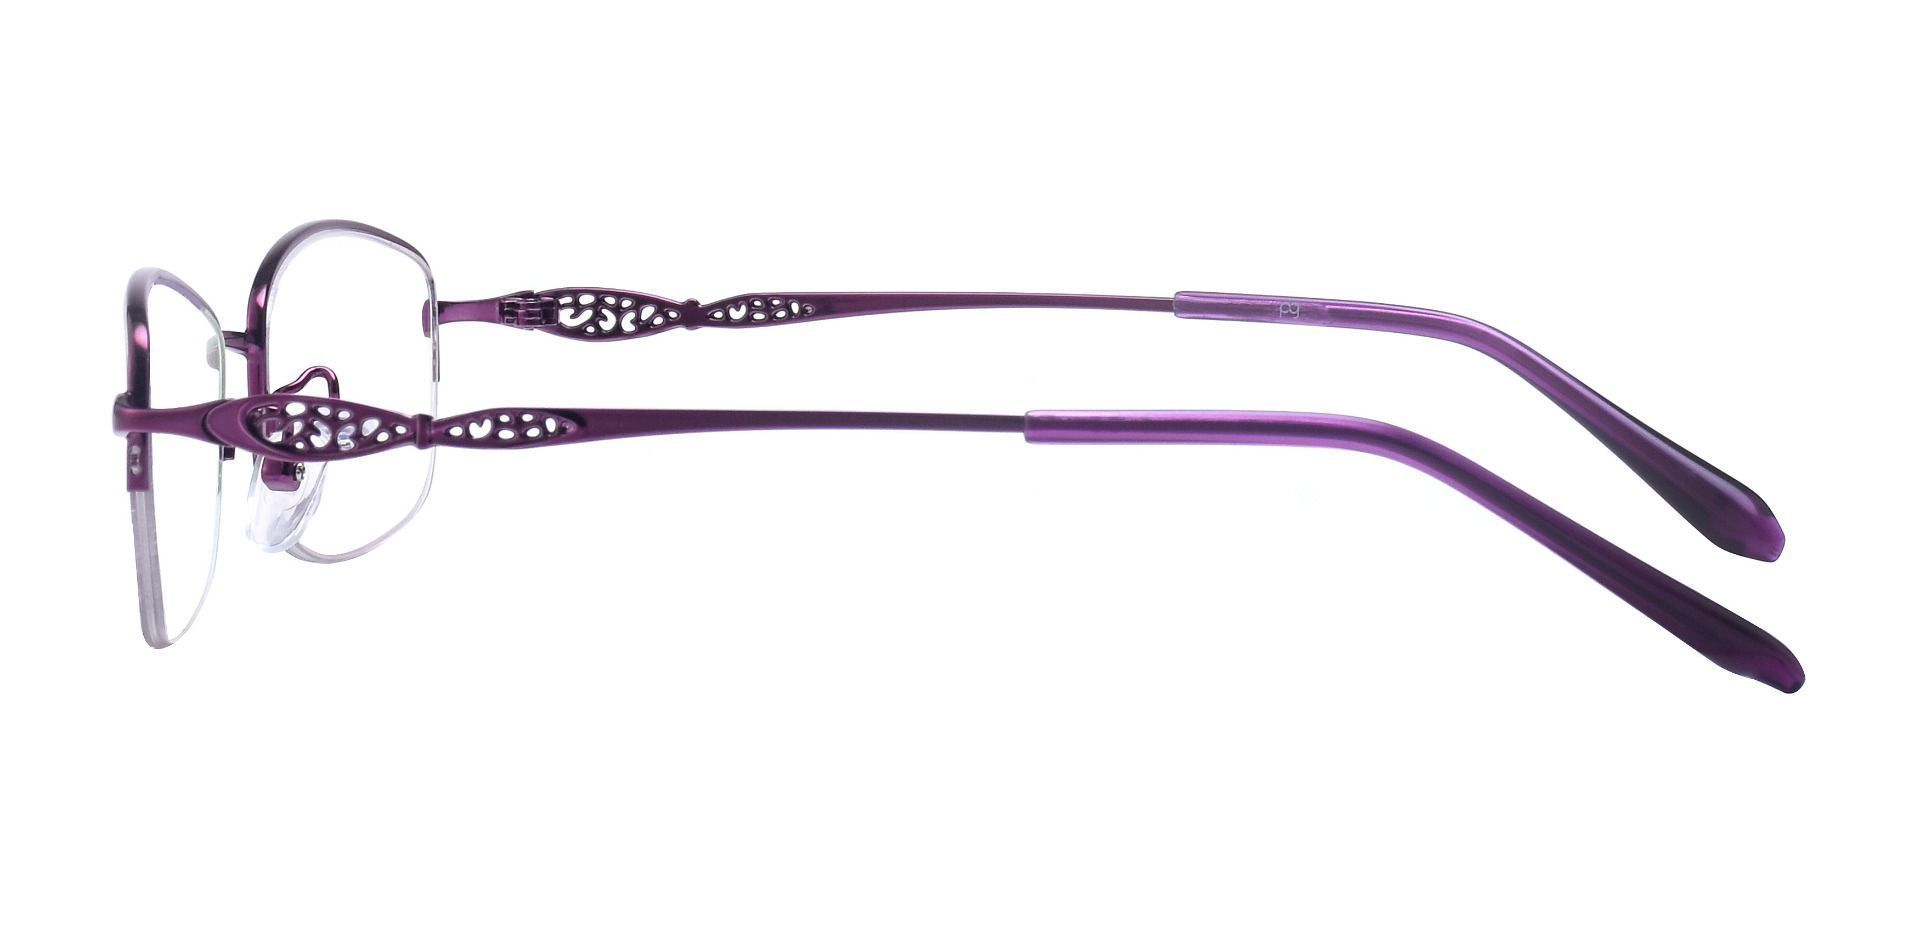 Blanche Oval Non-Rx Glasses - Purple